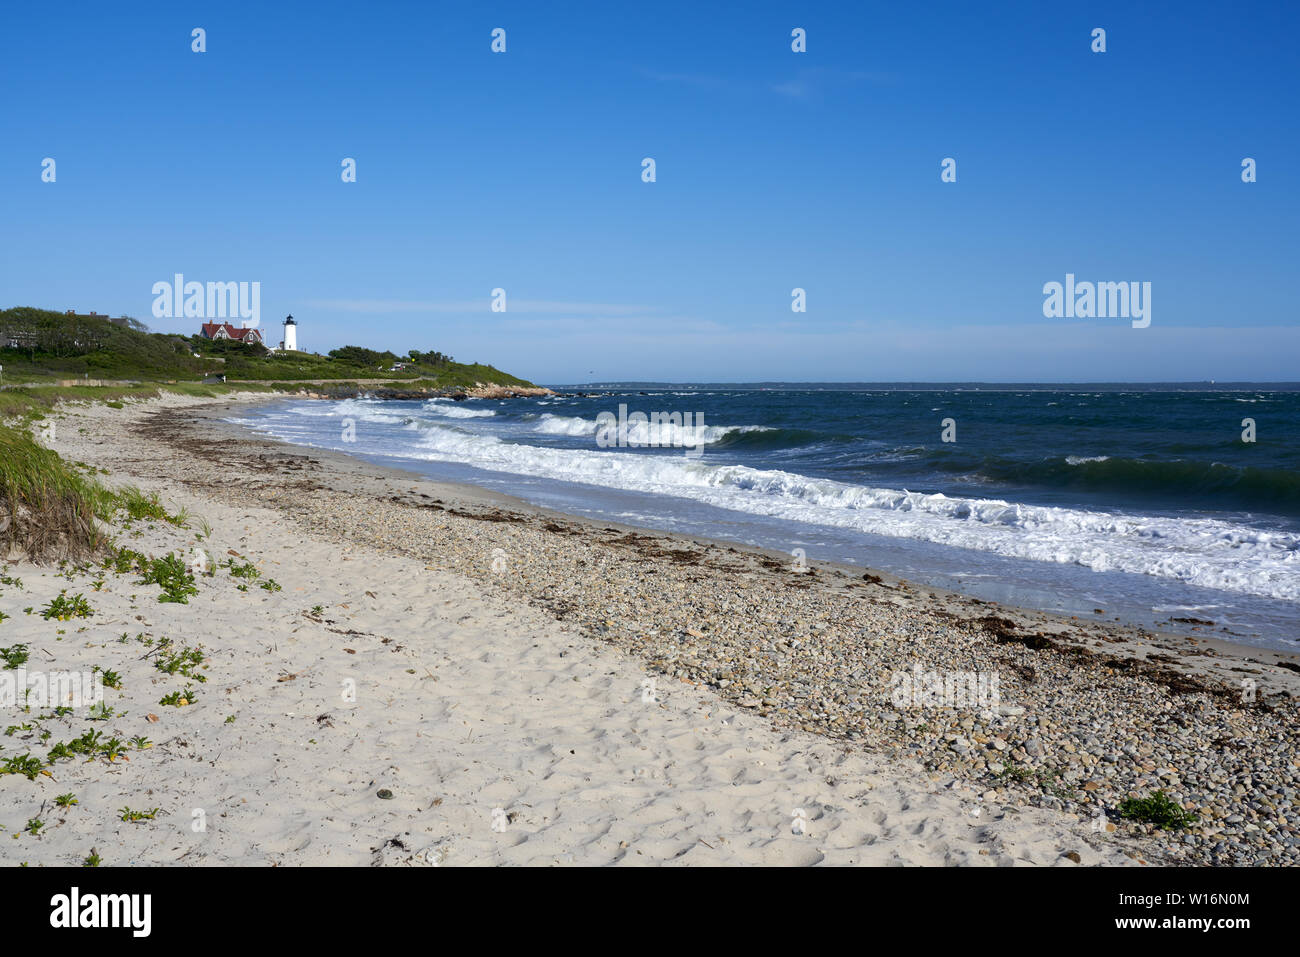 Plage de sable fin et des vagues avec lumière Nobska lighthouse dans la distance Banque D'Images